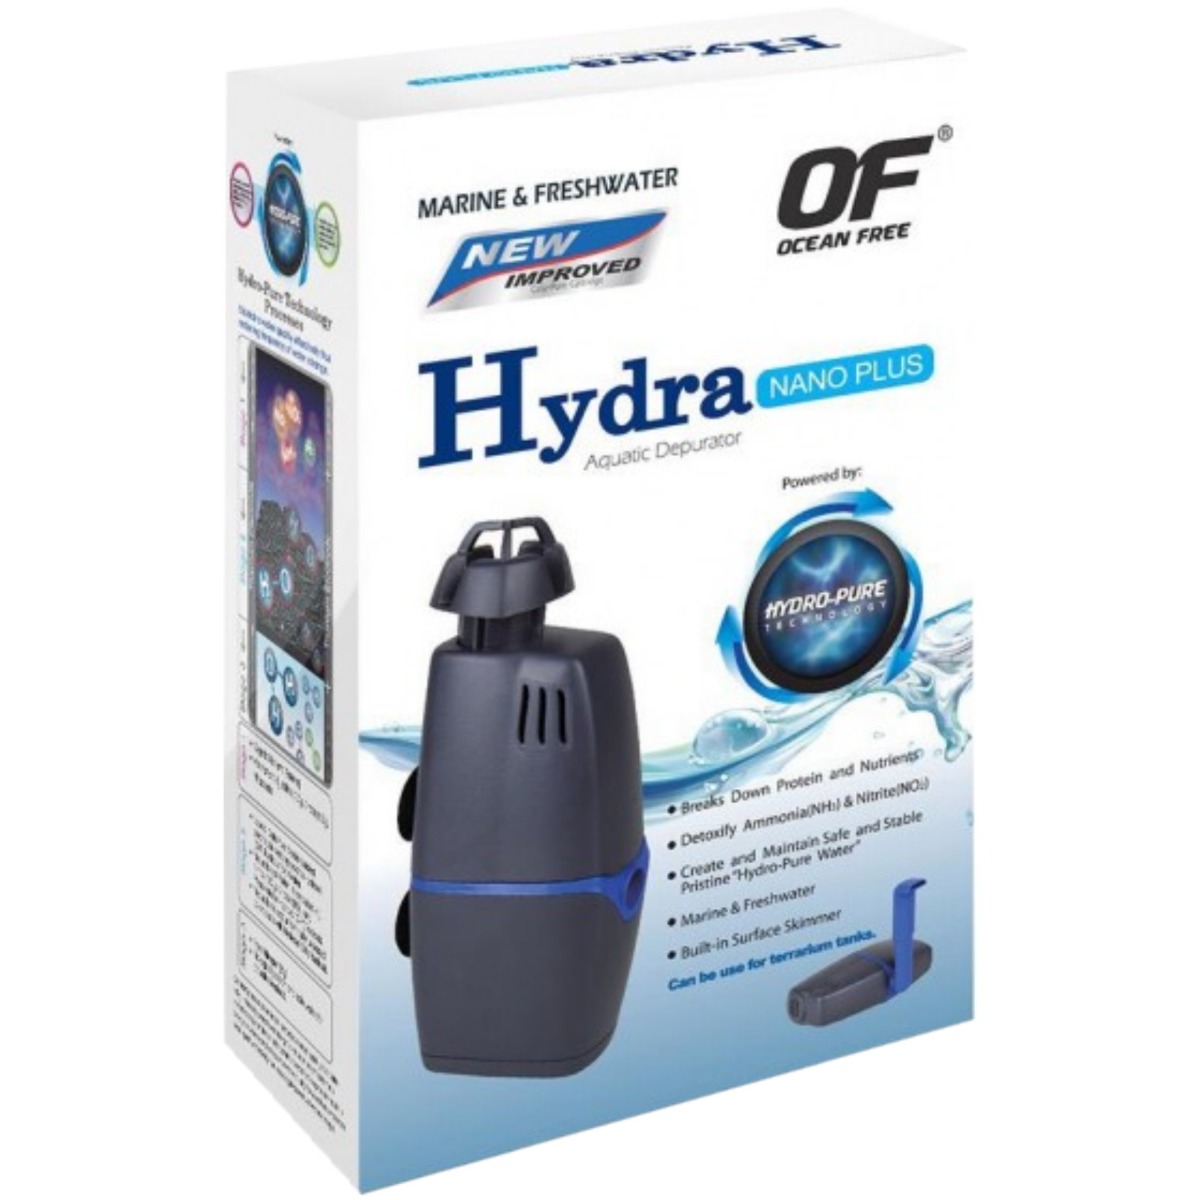 Hydra фильтр plugin flash tor browser hyrda